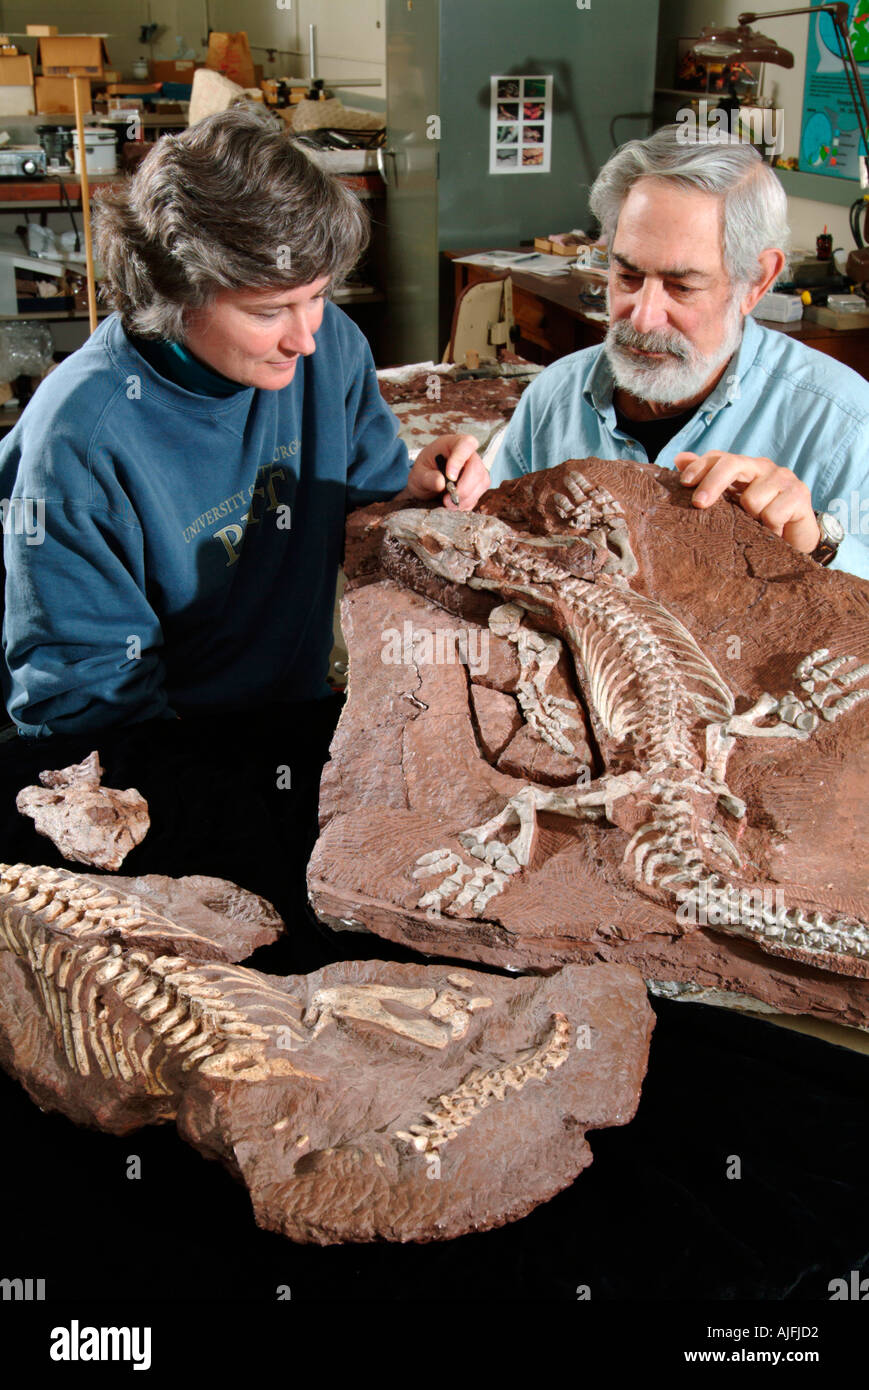 Examinant les paléontologues Reptile fossile Orobates, Diadectidea pabsti, Diadectomorpha, début du Permien Allemagne Bromacker Localité Banque D'Images